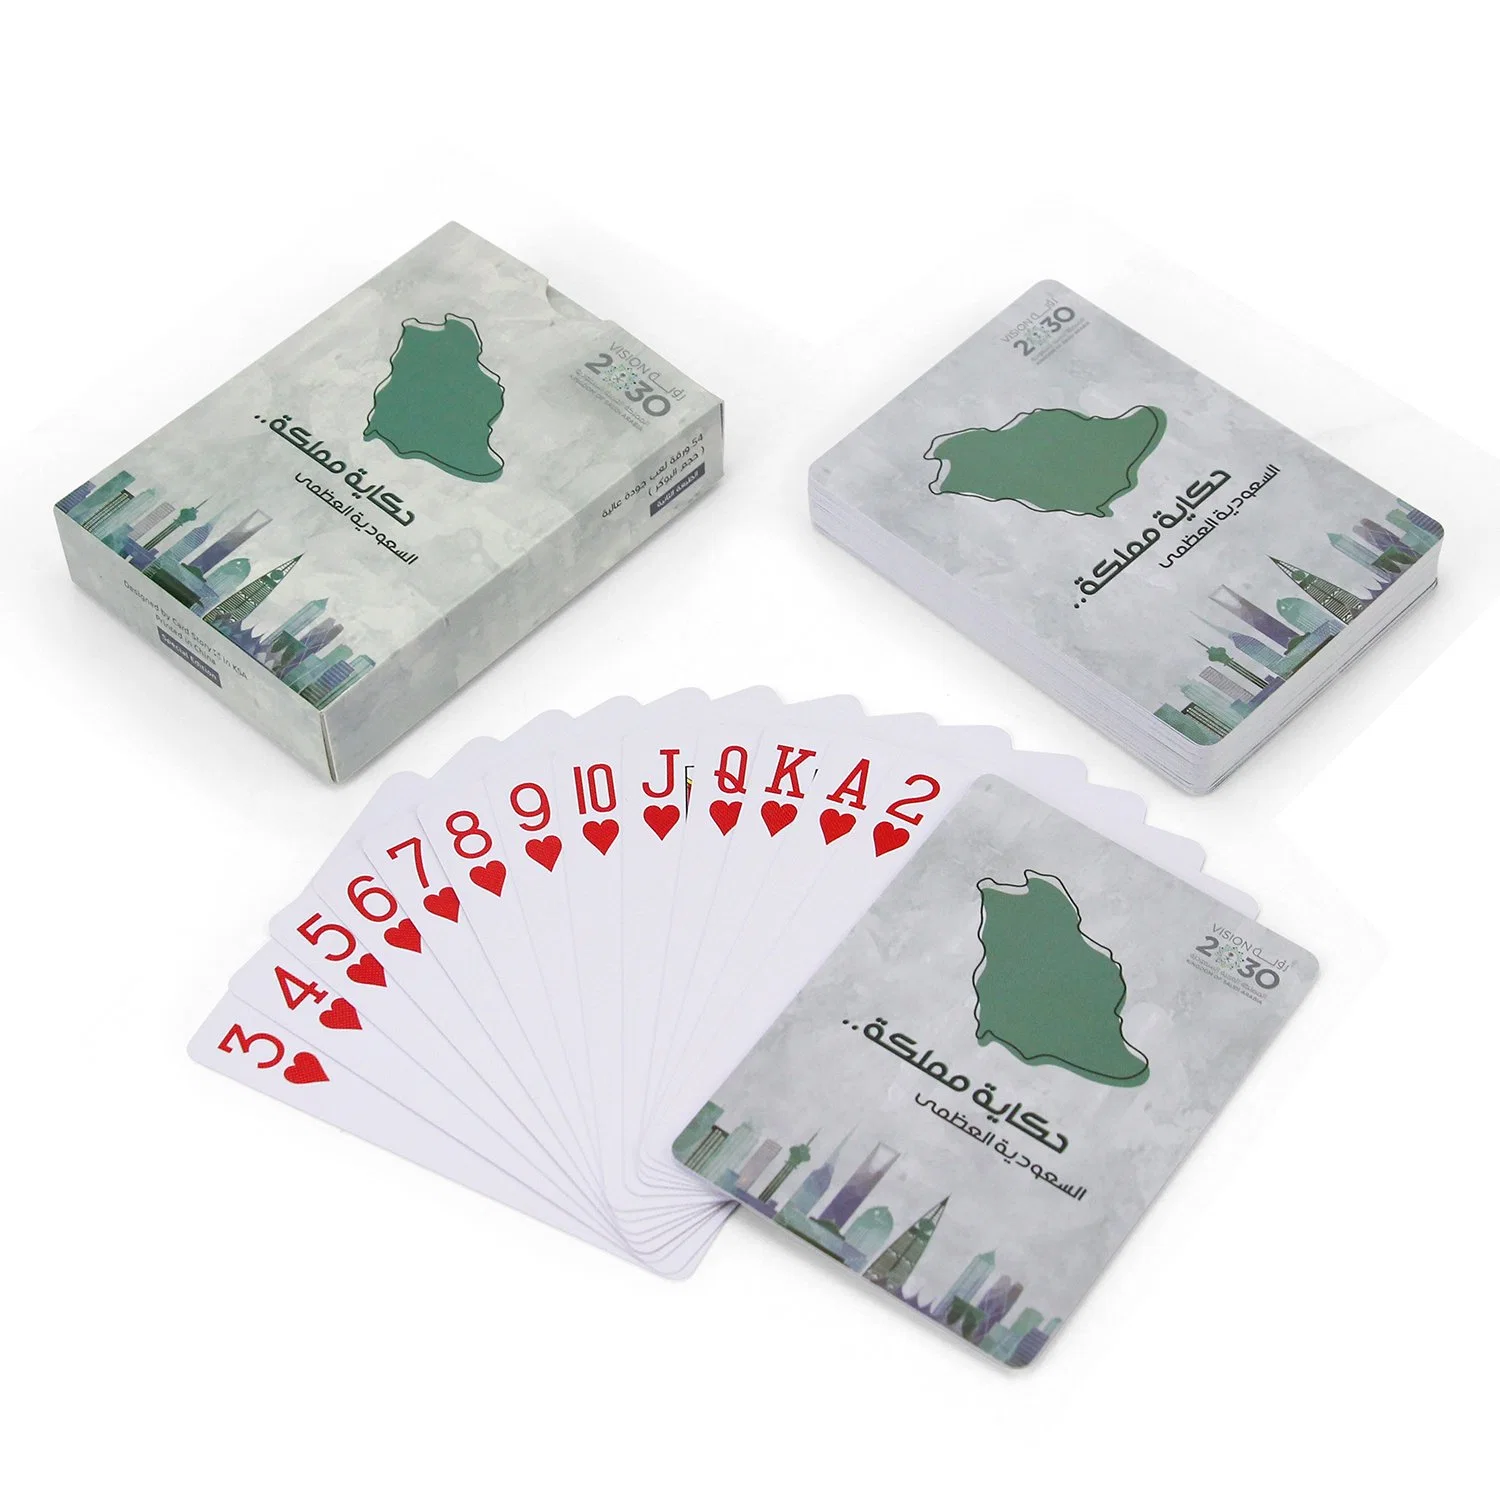 سعر الجملة بطاقة بوكر قطر 100% البلاستيك العربية السعودية الكويت بطاقة اللعب 100% بطاقات اللعب البلاستيكية